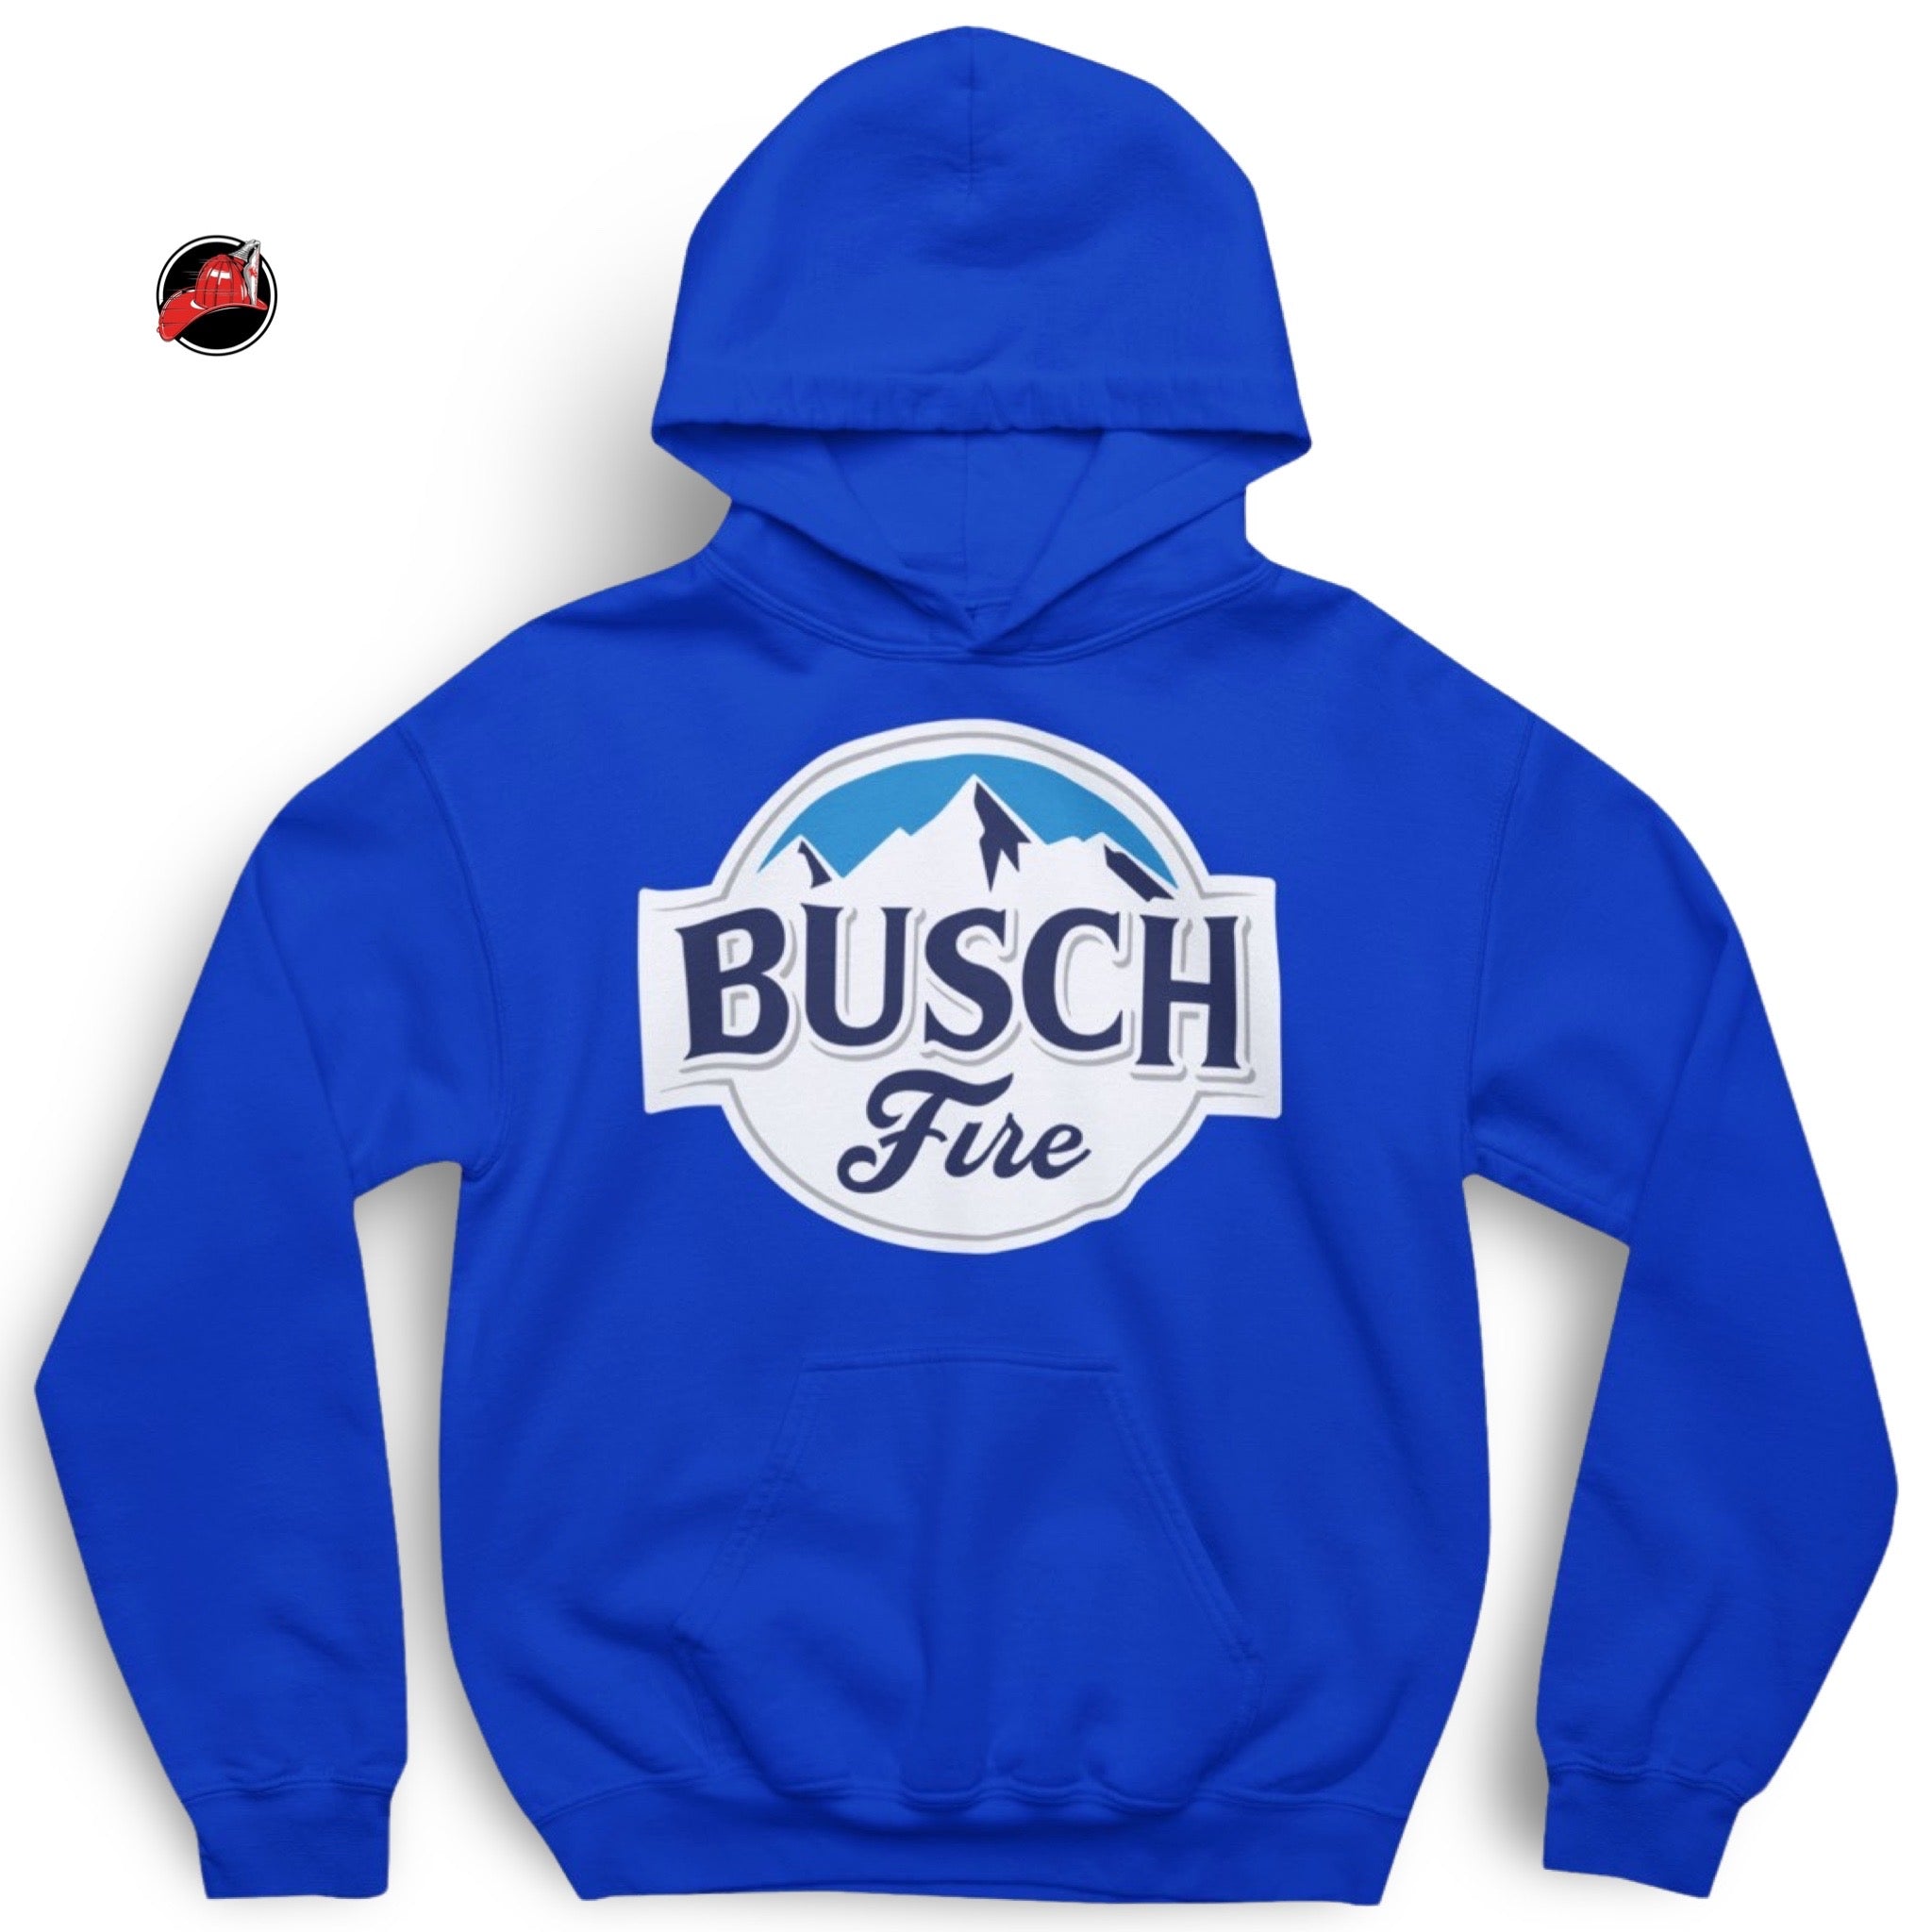 Busch Fire Hoodie